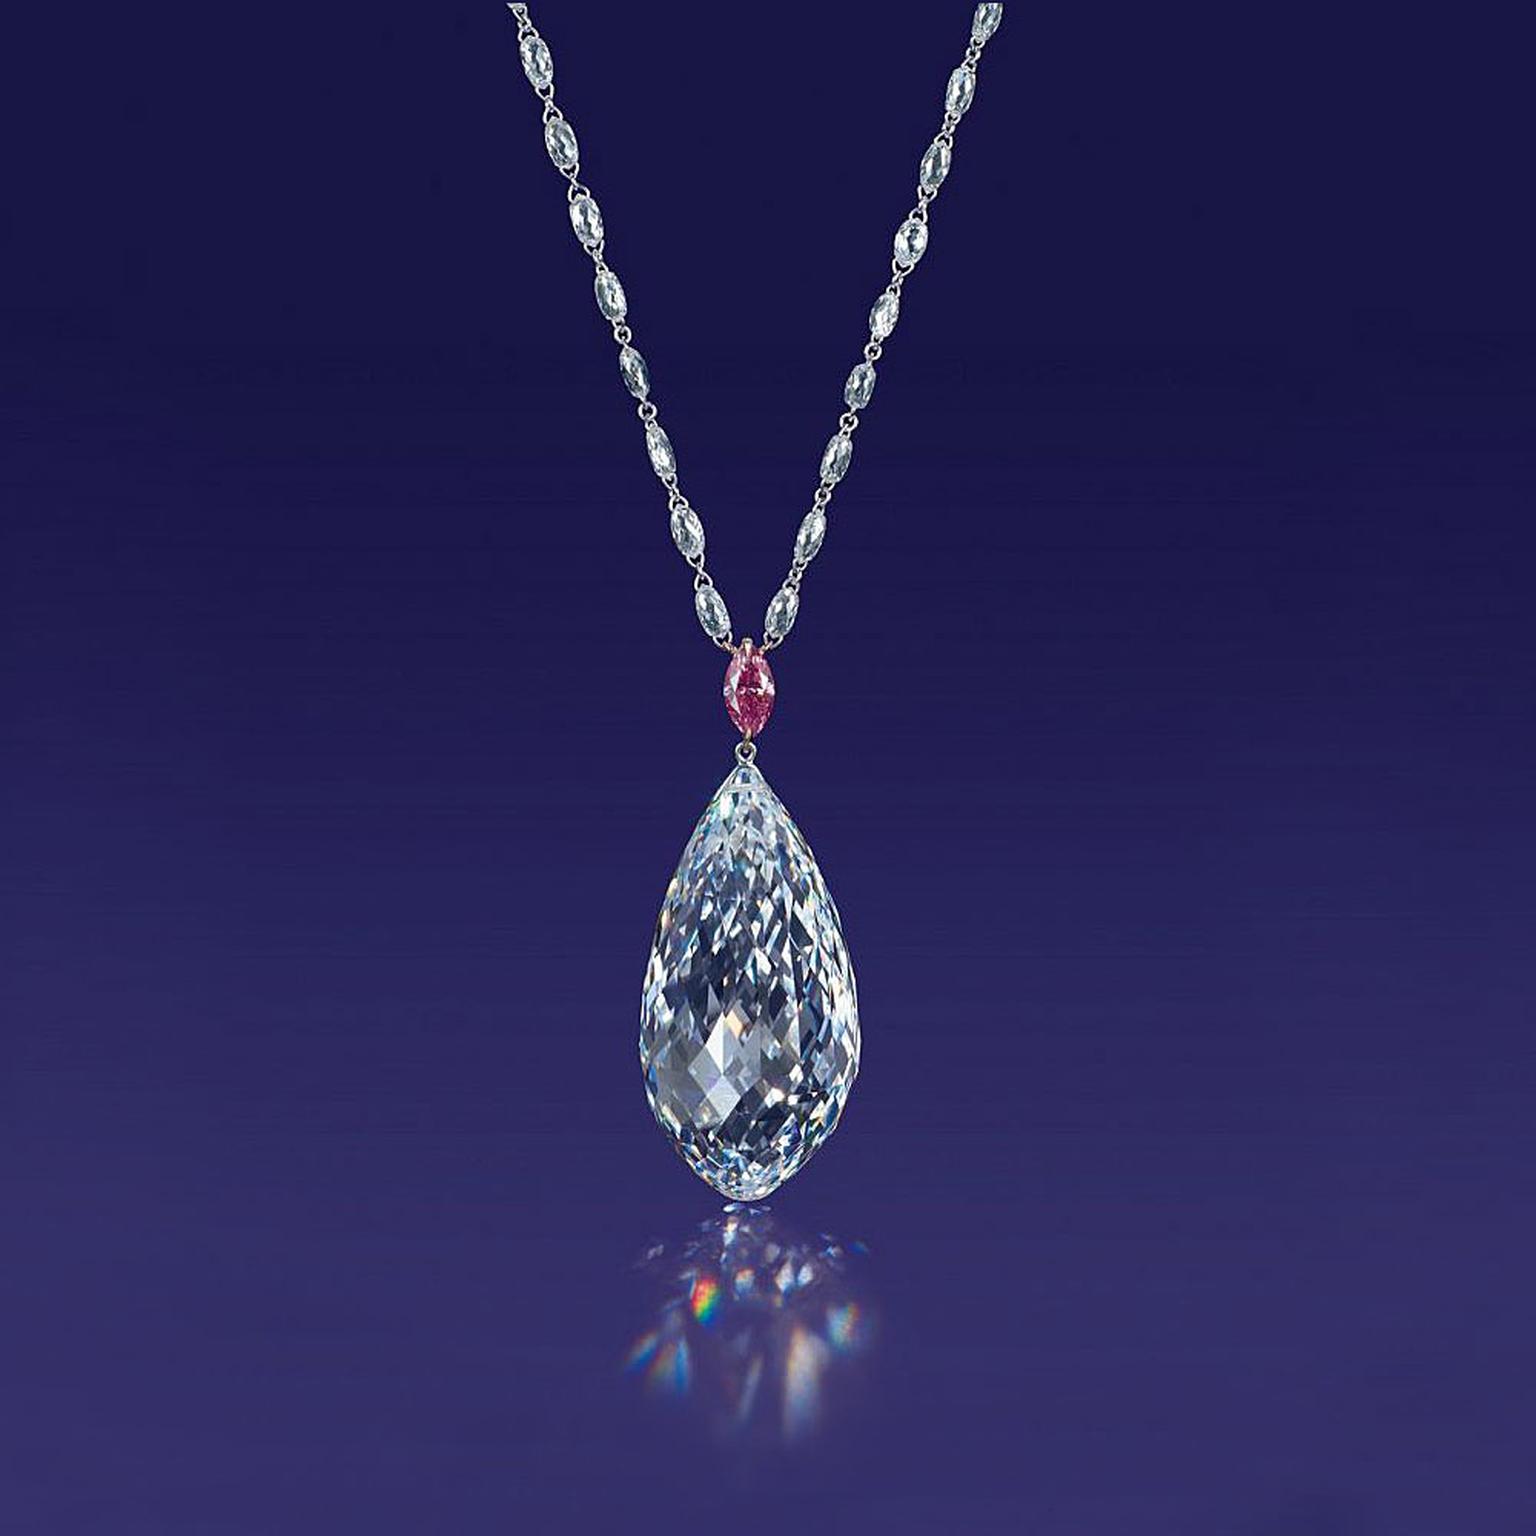 Christie's Hong Kong briolette diamond pendant necklace